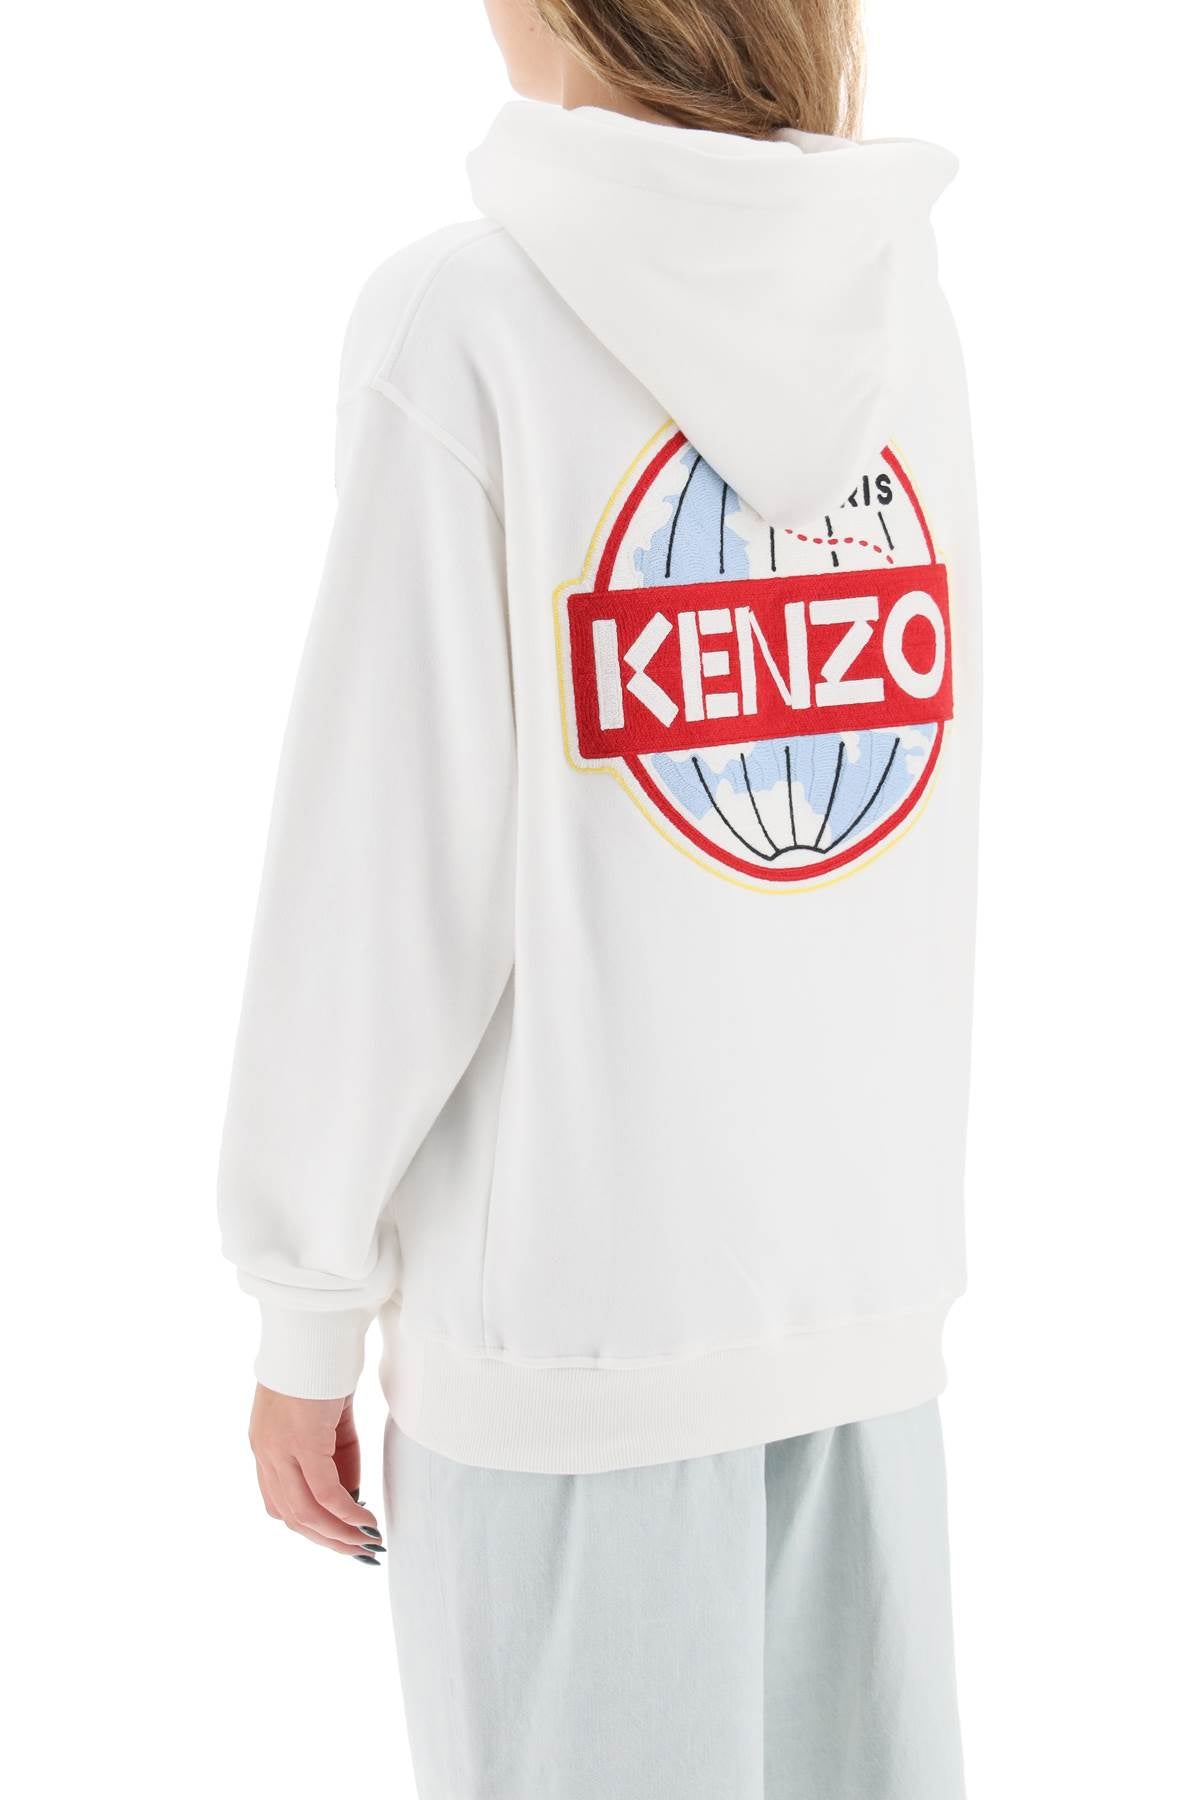 Kenzo kenzo world embroidered hoodie-2